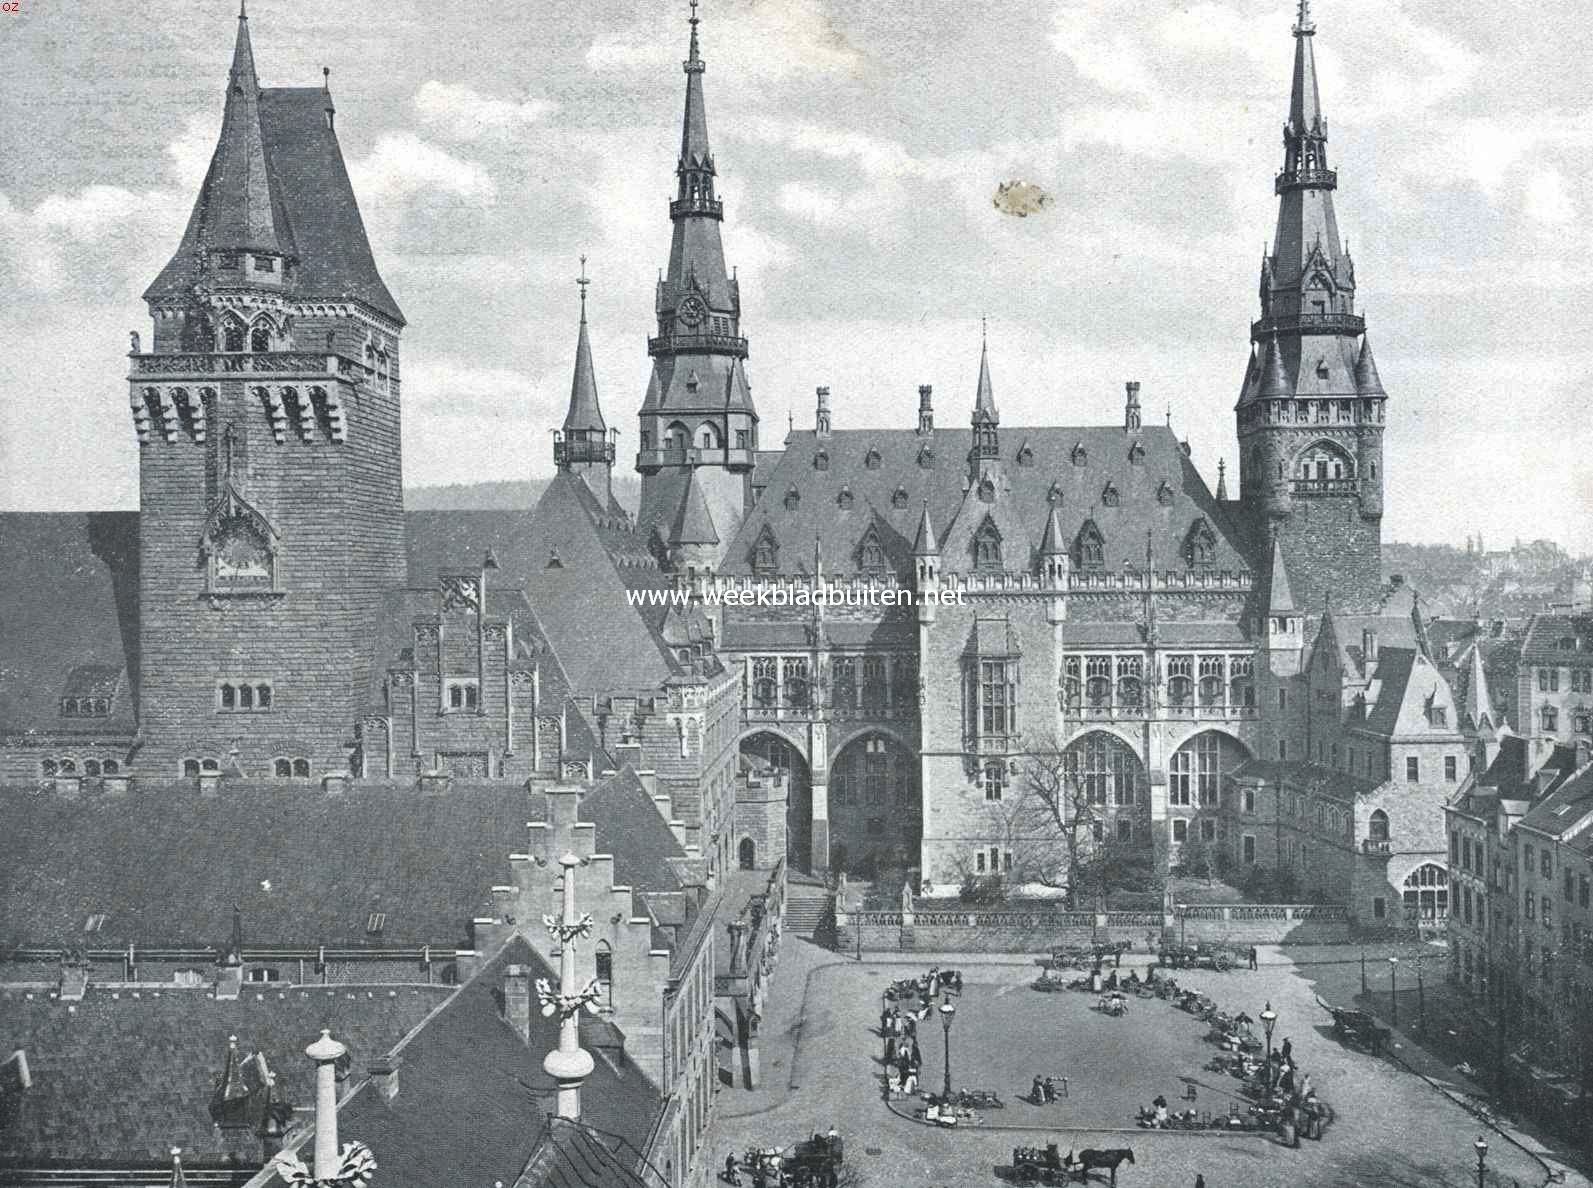 Gezicht op de achterzijde van de gerstaureerde stadhuisgebouwen te Aken, die in 1353 werden opgetrokken op de bouwvallen van het keizerlijk paleis, in 778 door Karel den Groote gesticht